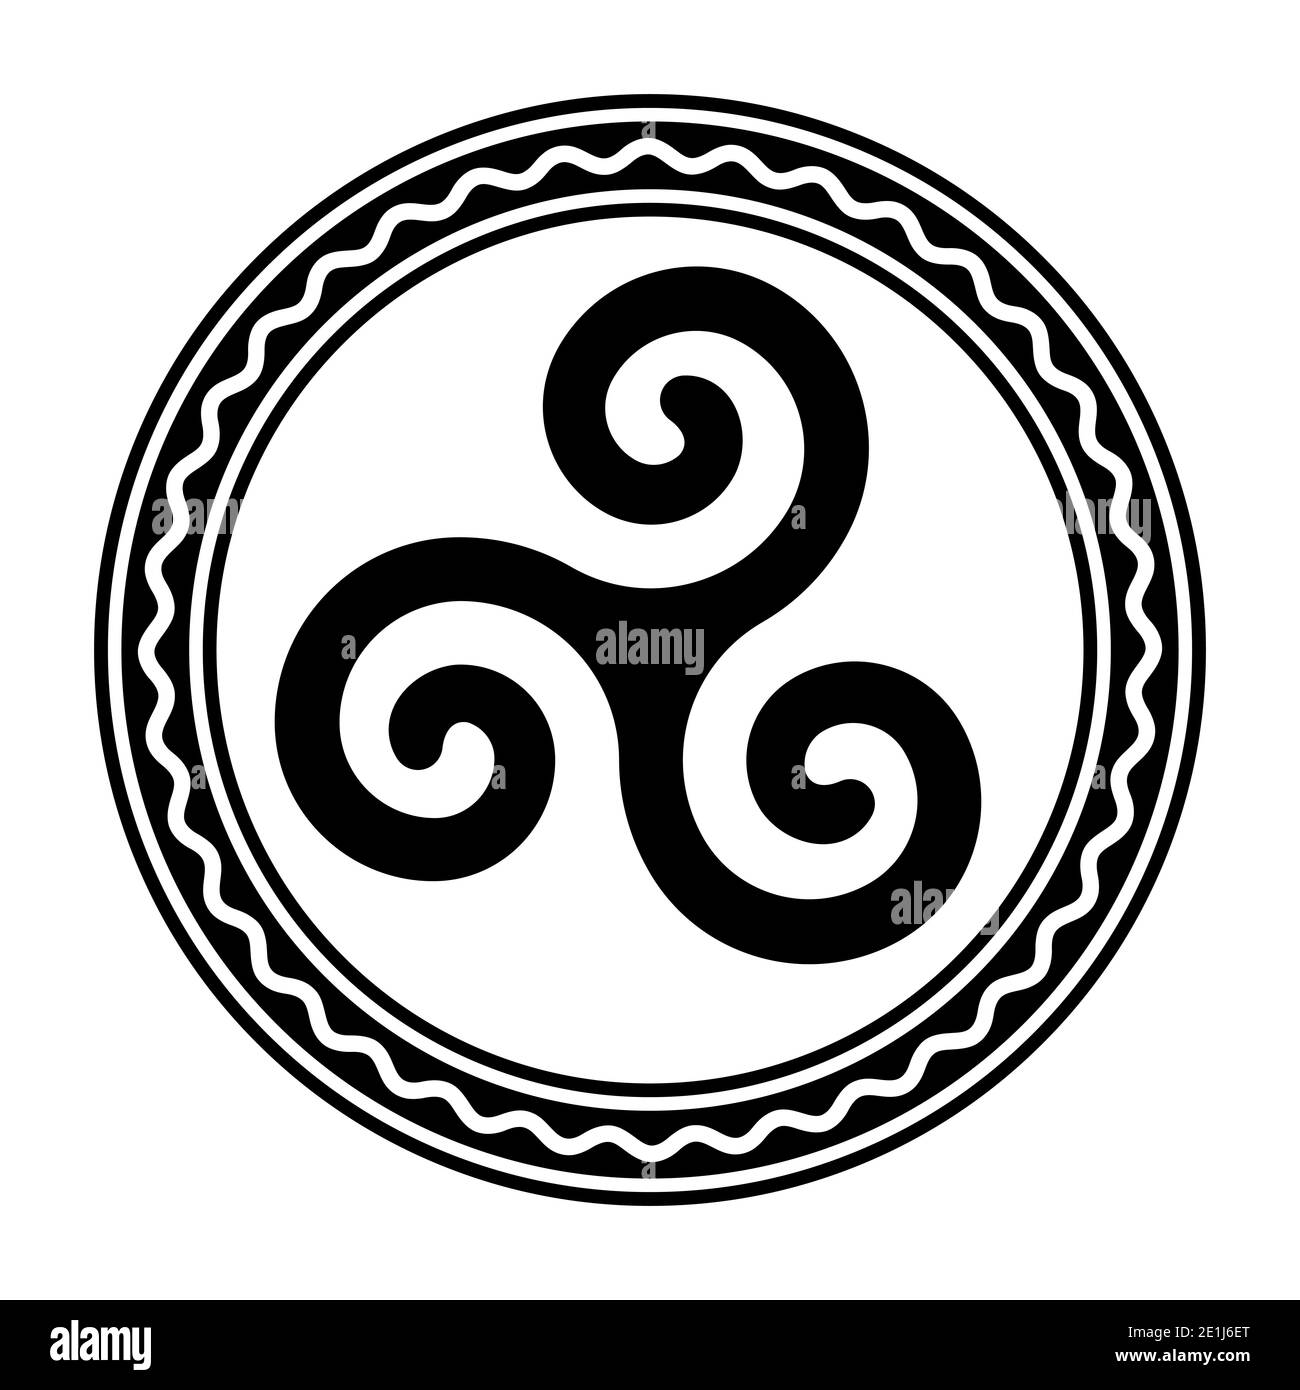 Triskele im Kreisrahmen mit weißer Wellenlinie. Triskelion, altes Symbol und Motiv, bestehend aus dreifacher Spirale, die Rotationssymmetrie. Stockfoto